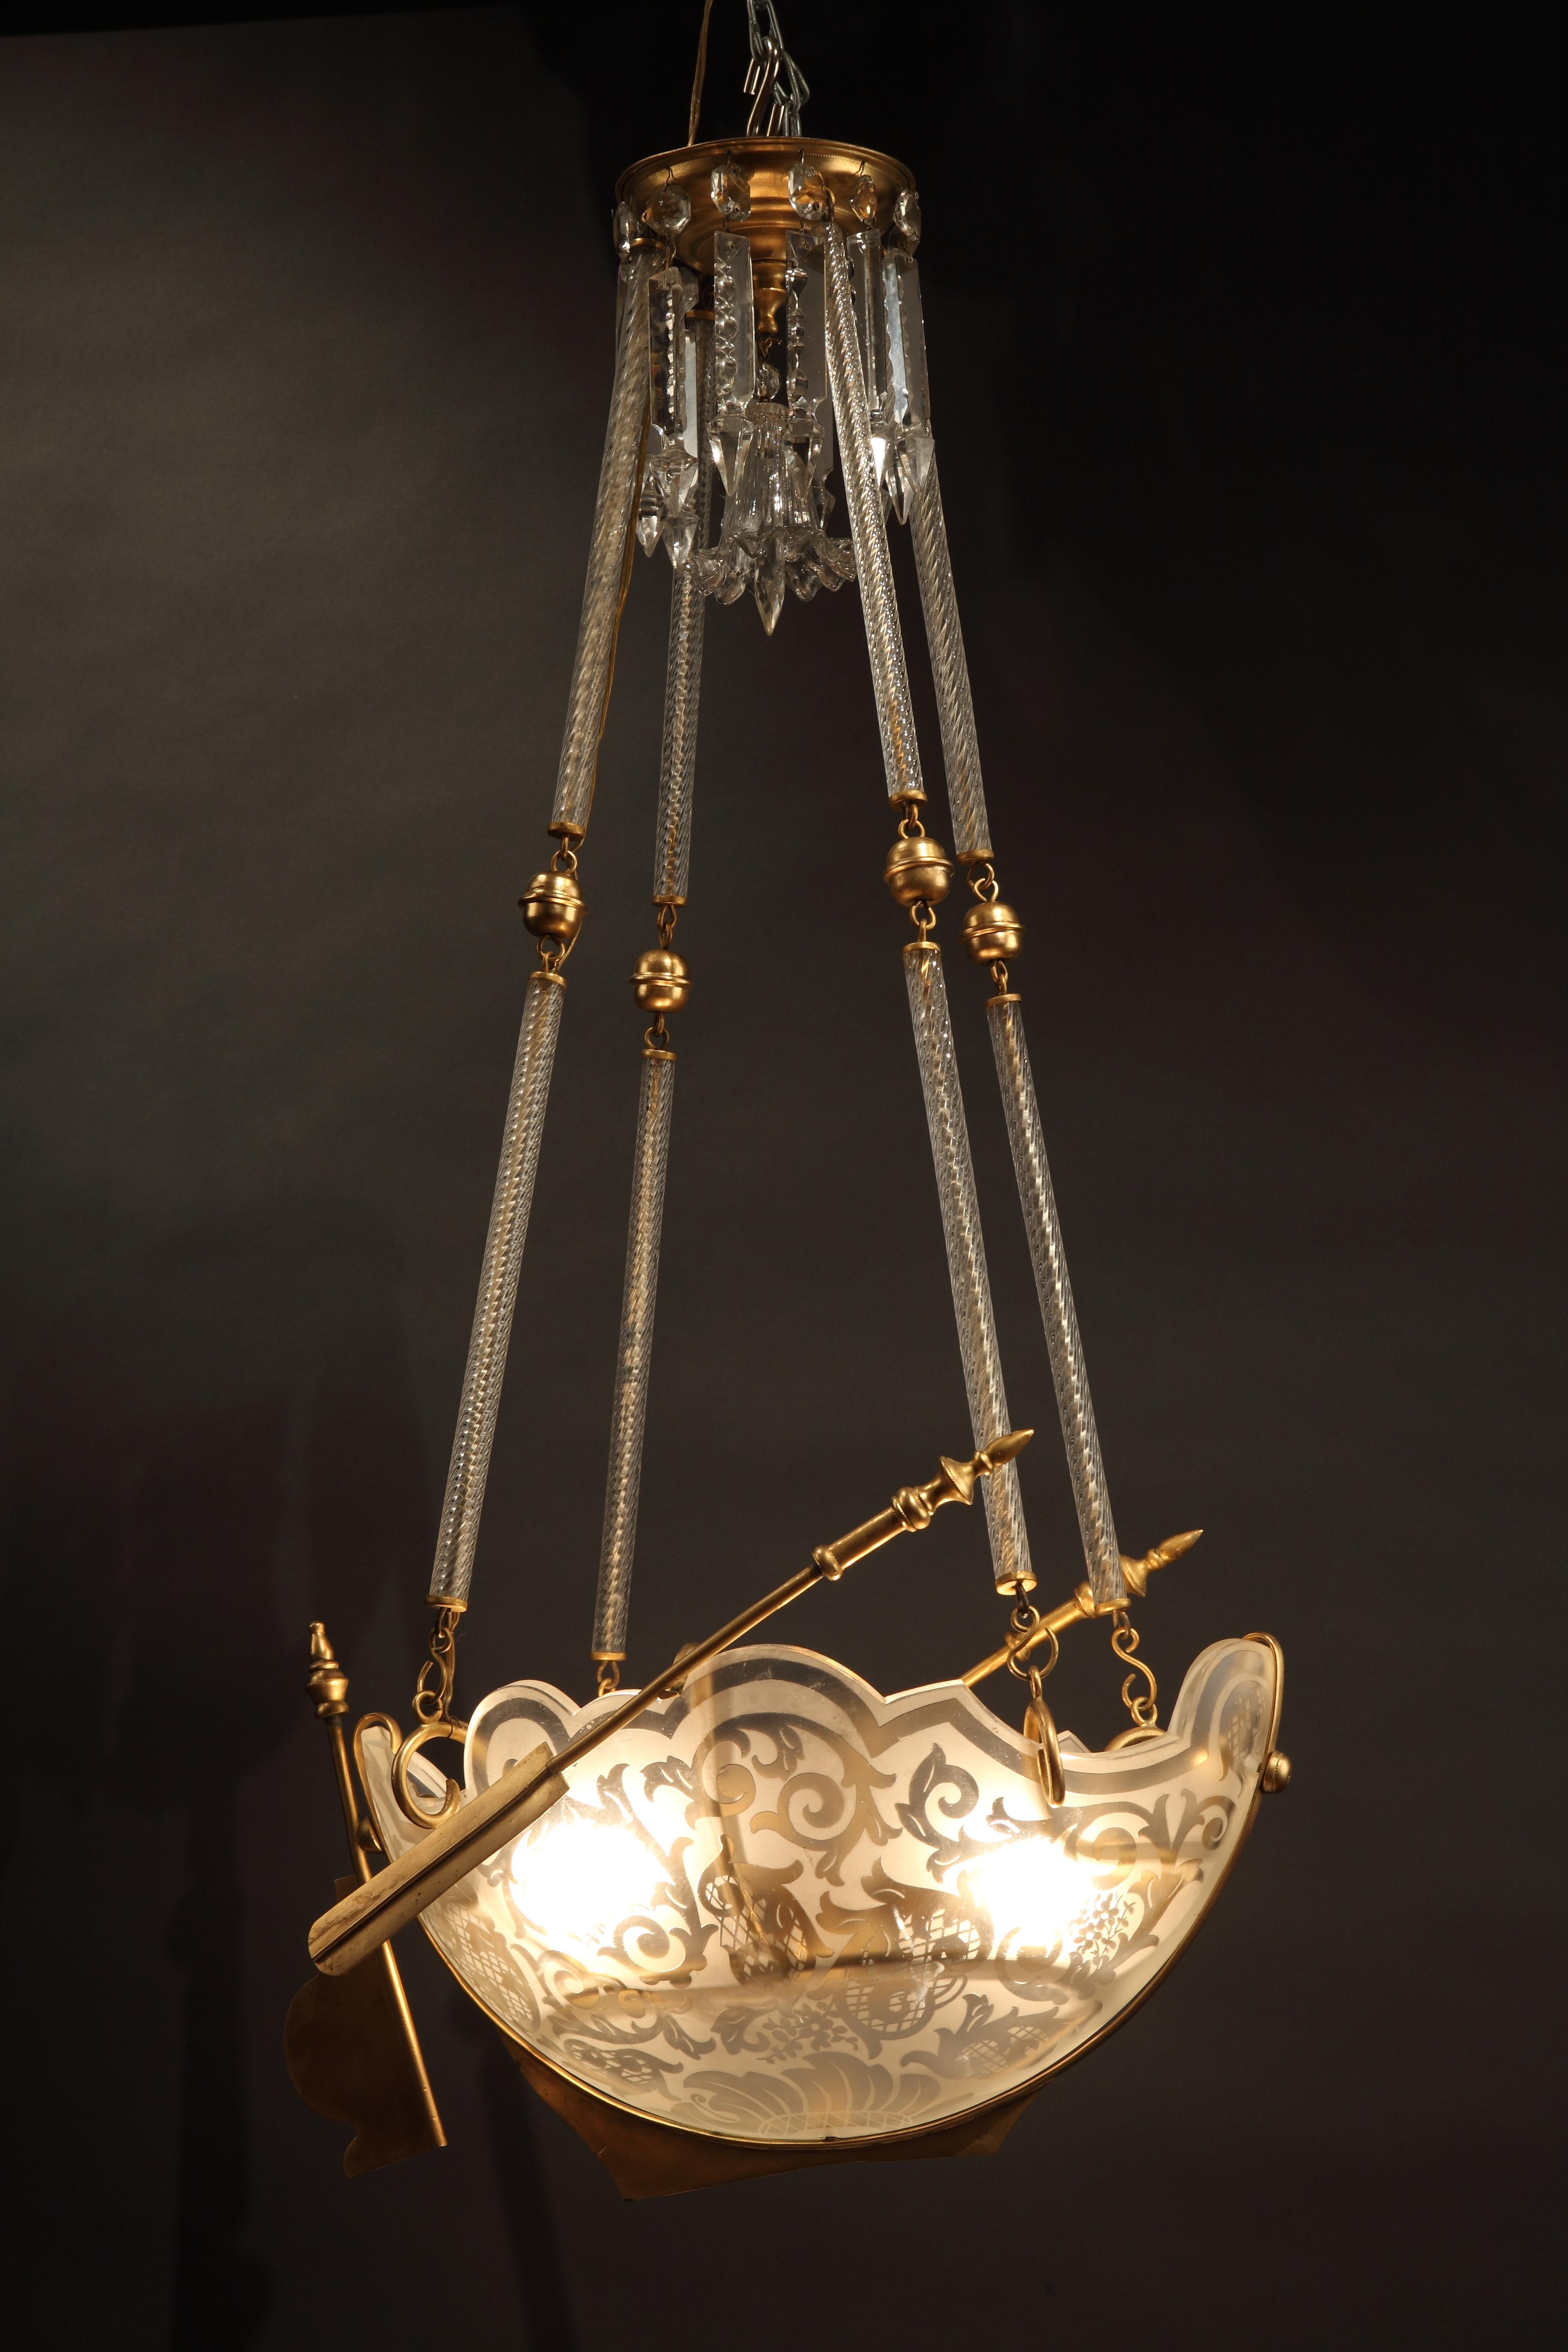 Magnifique lustre en forme de vaisseau en bronze doré et cristal gravé attribué à Baccarat, suspendu par quatre chaînes articulées. Un pendentif de plafond décoré de prismes et d'une cloche centrale en cristal ciselé vient compléter le lustre.

La